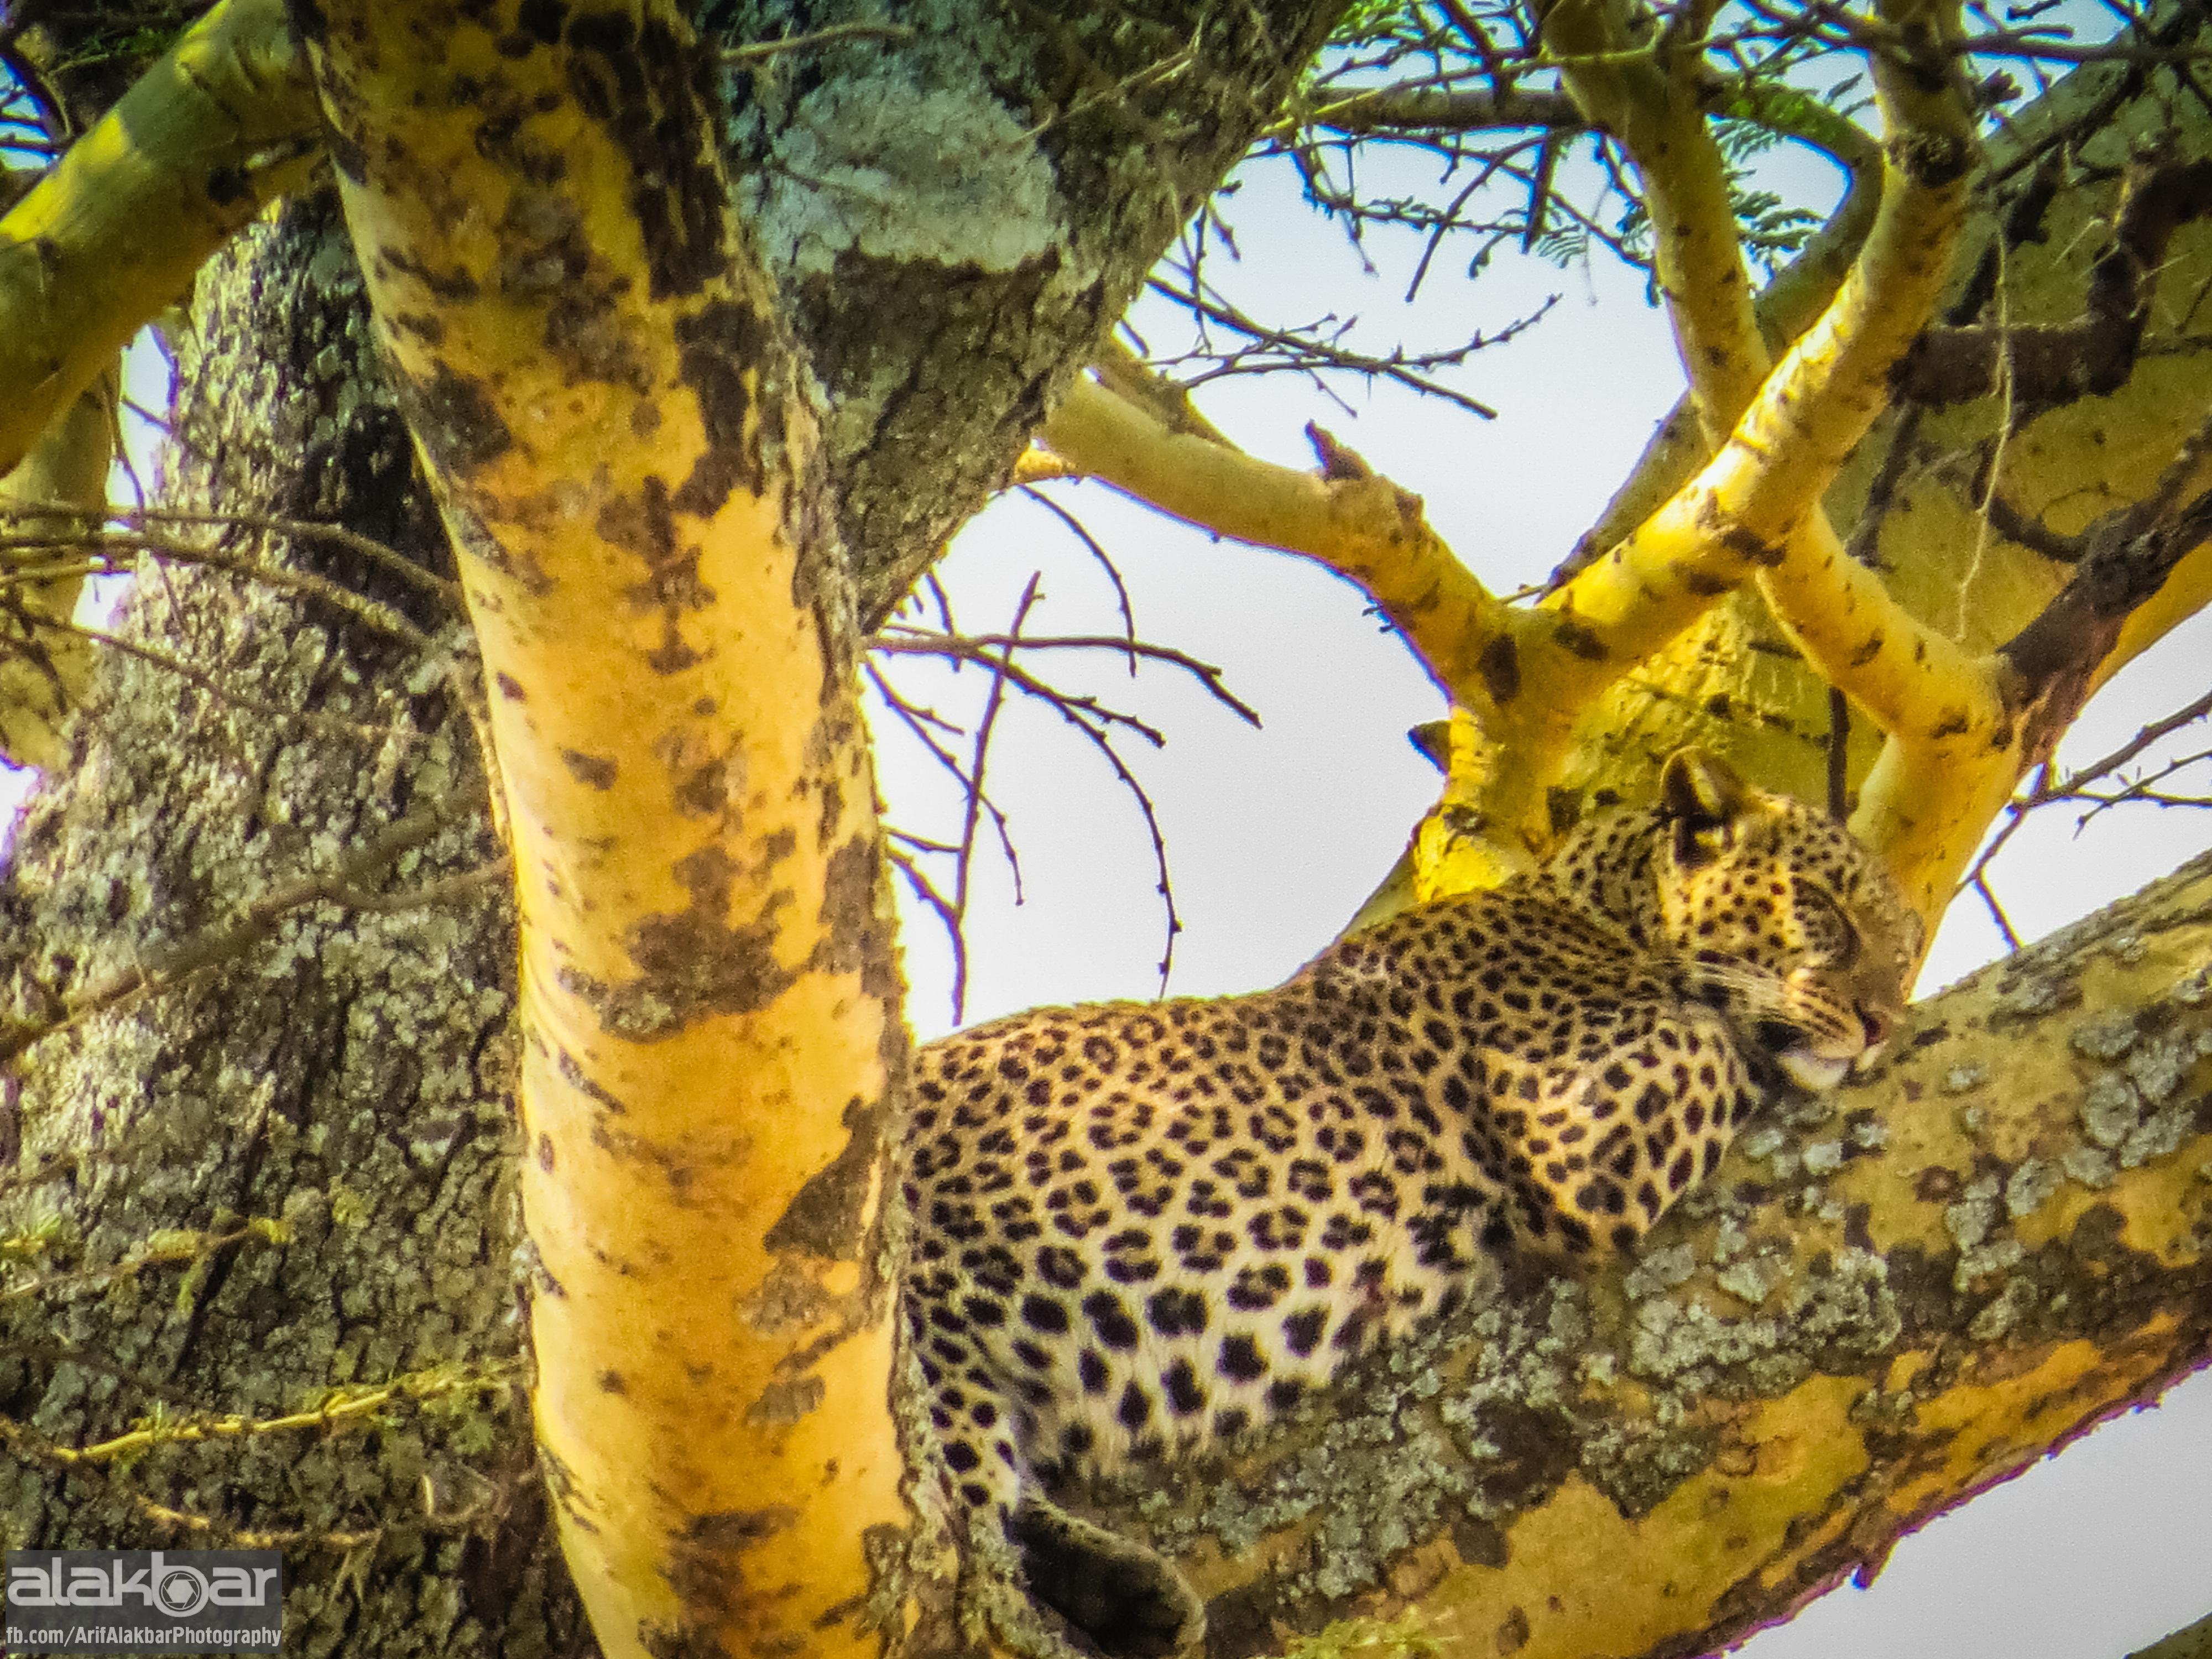 Leopard yeganə pişikkimidir ki, şikarını ağacın başına çıxarıb orada nuş edir